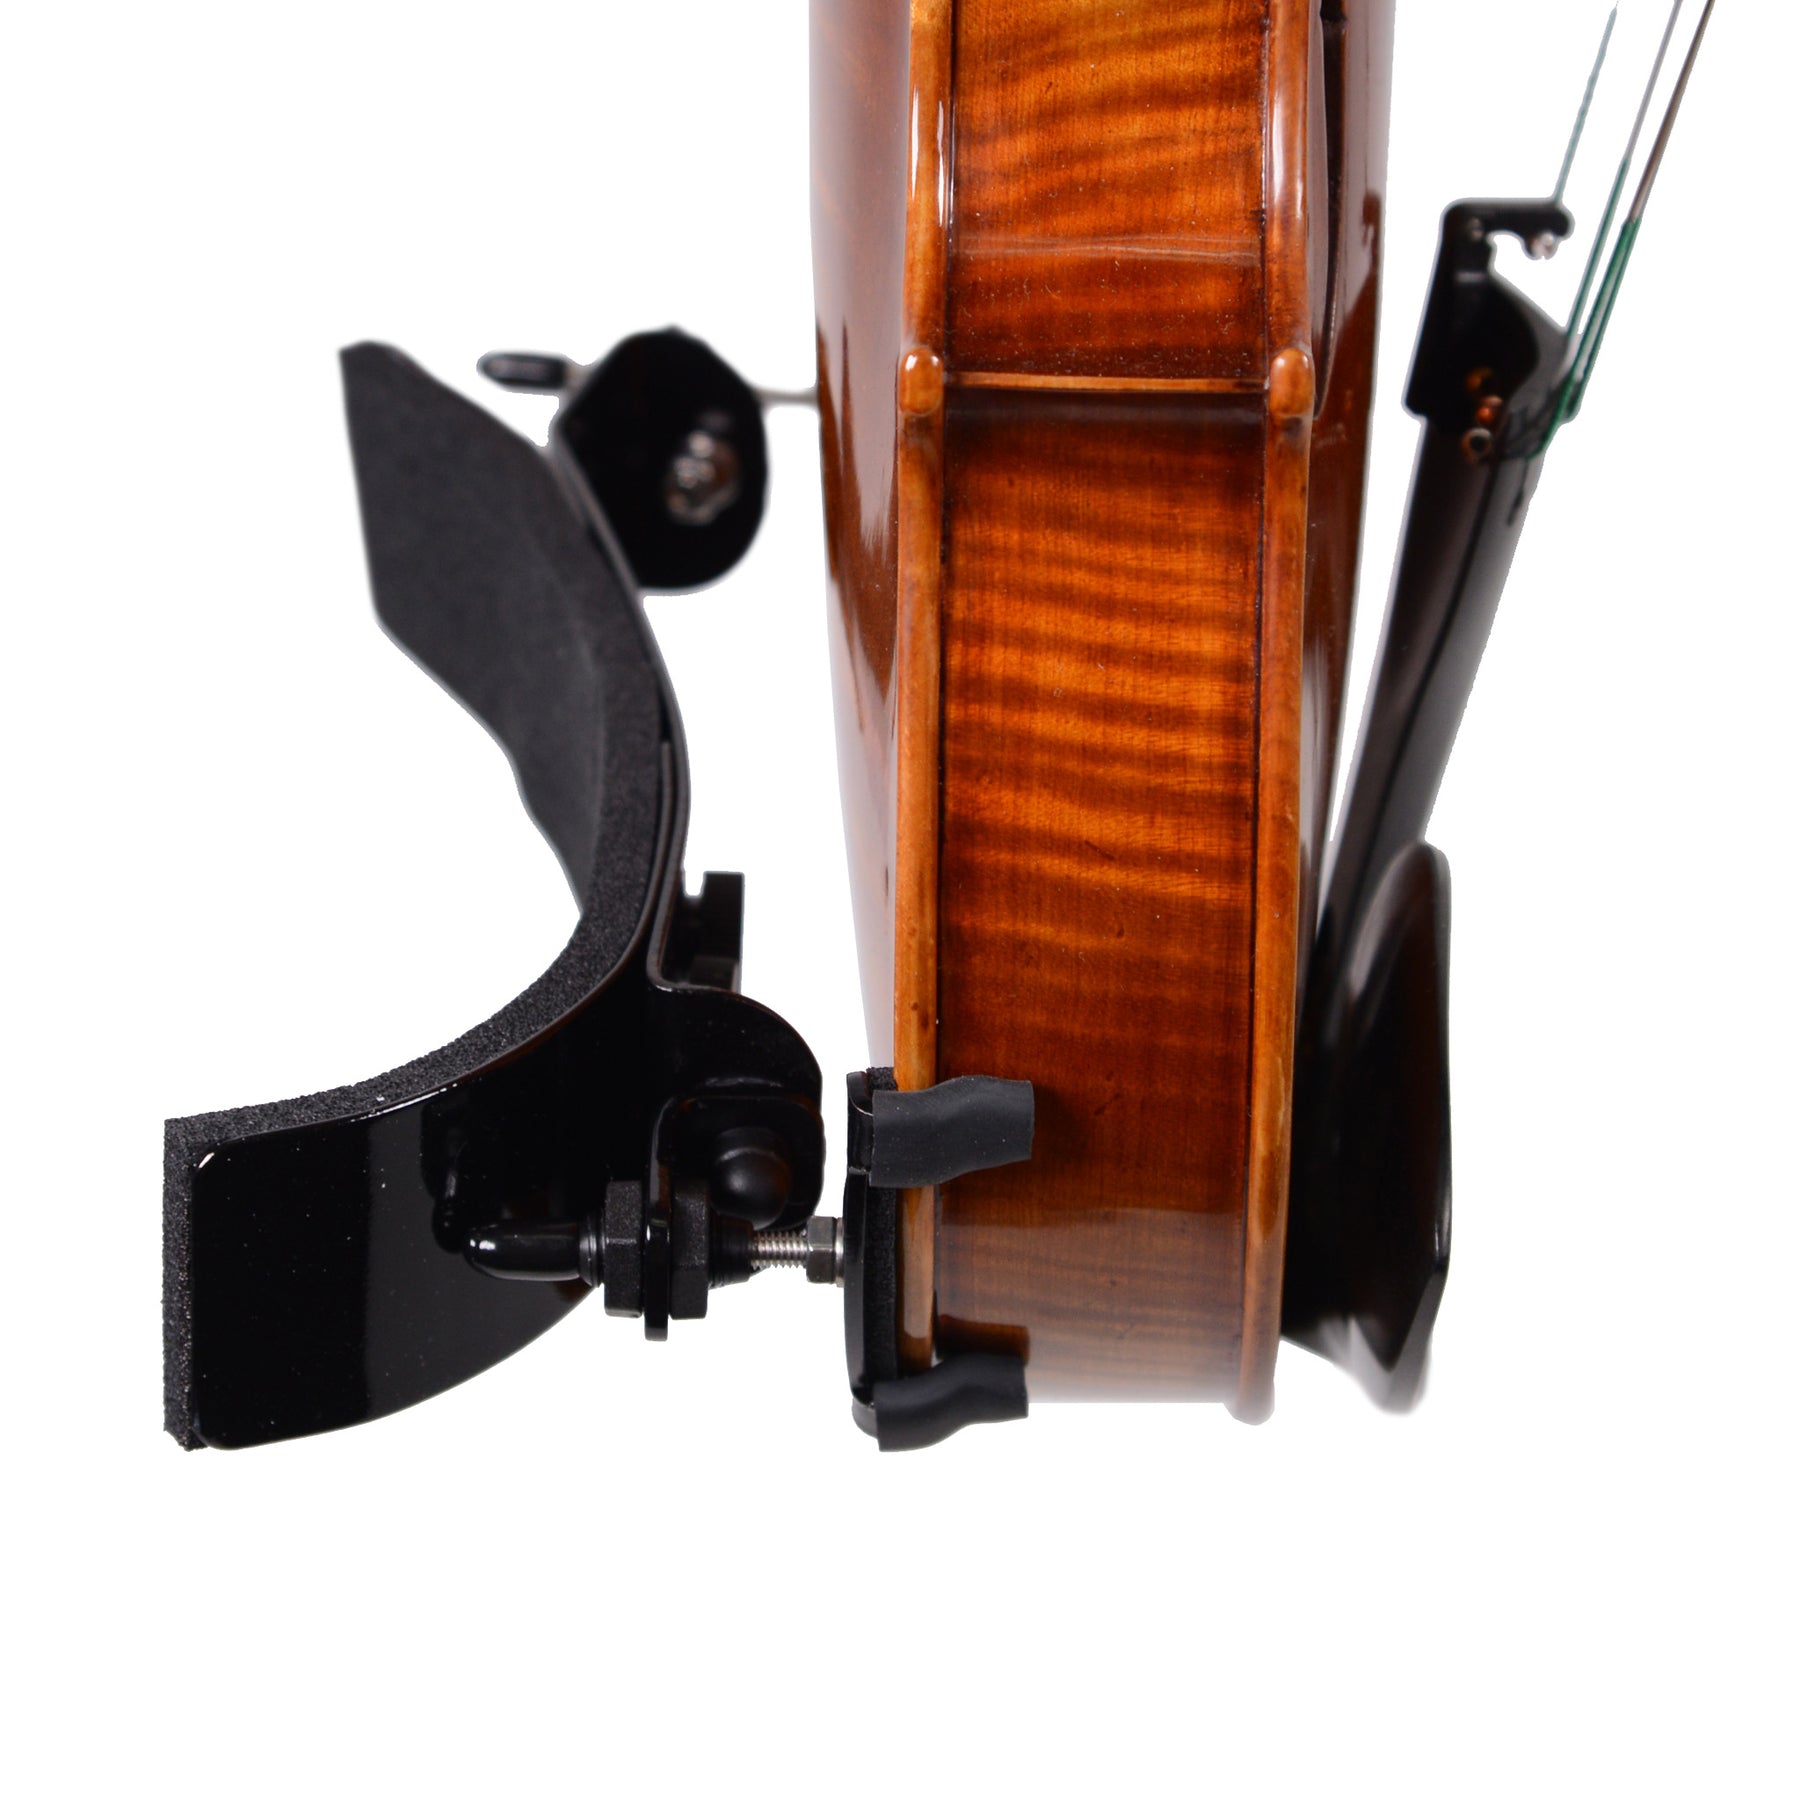 angle photo of bonmusica shoulder rest for violin